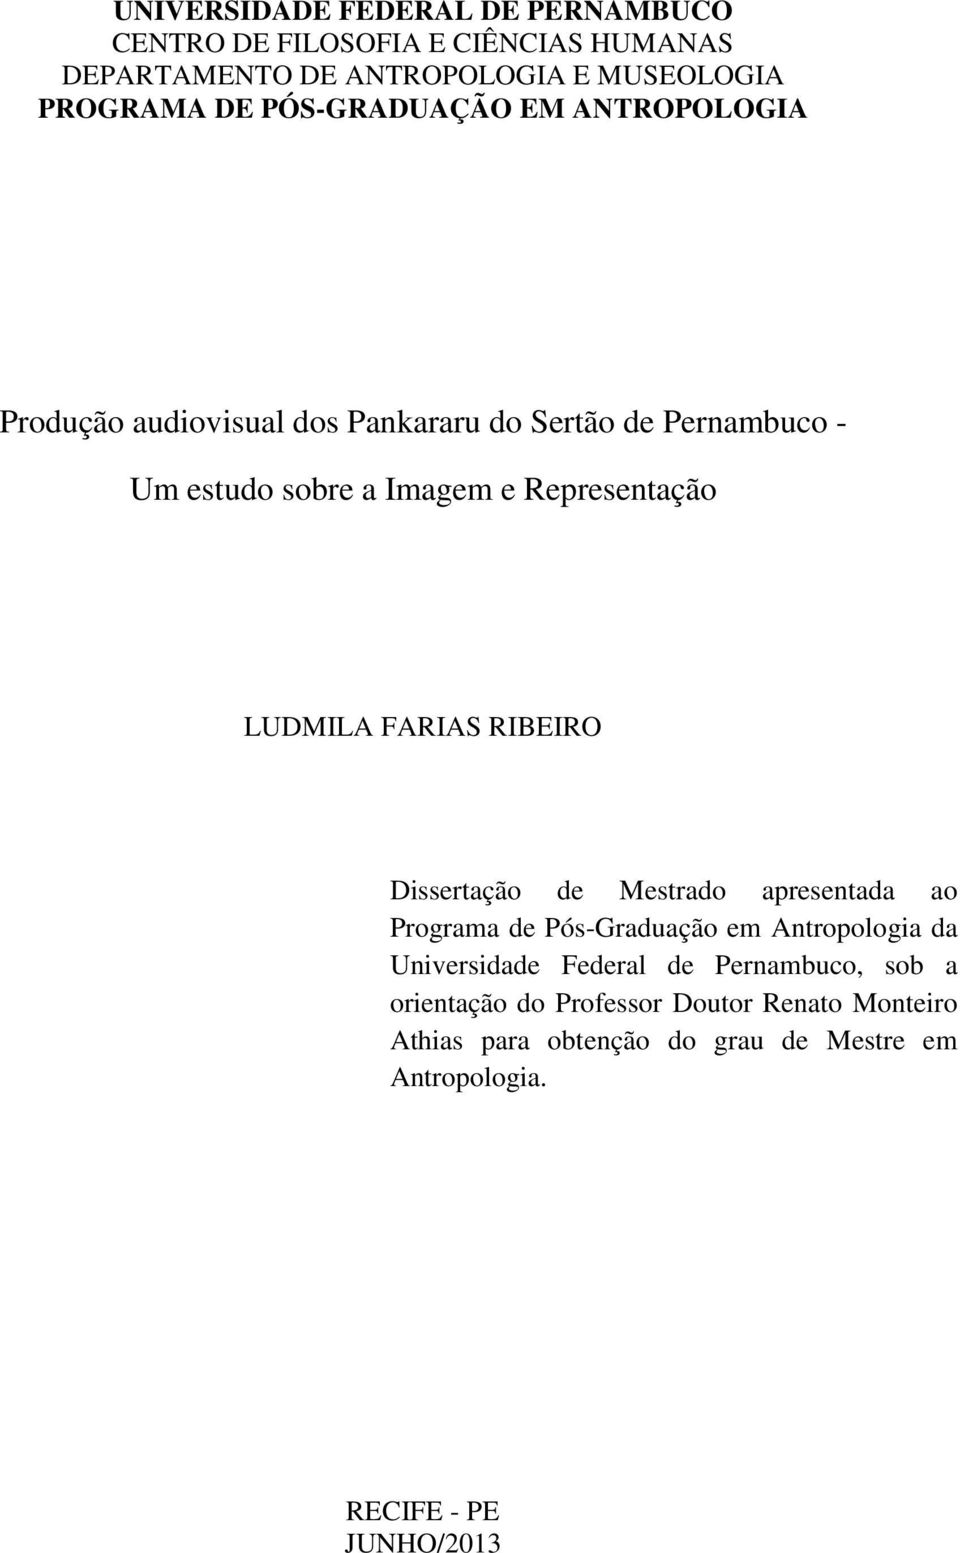 LUDMILA FARIAS RIBEIRO Dissertação de Mestrado apresentada ao Programa de Pós-Graduação em Antropologia da Universidade Federal de